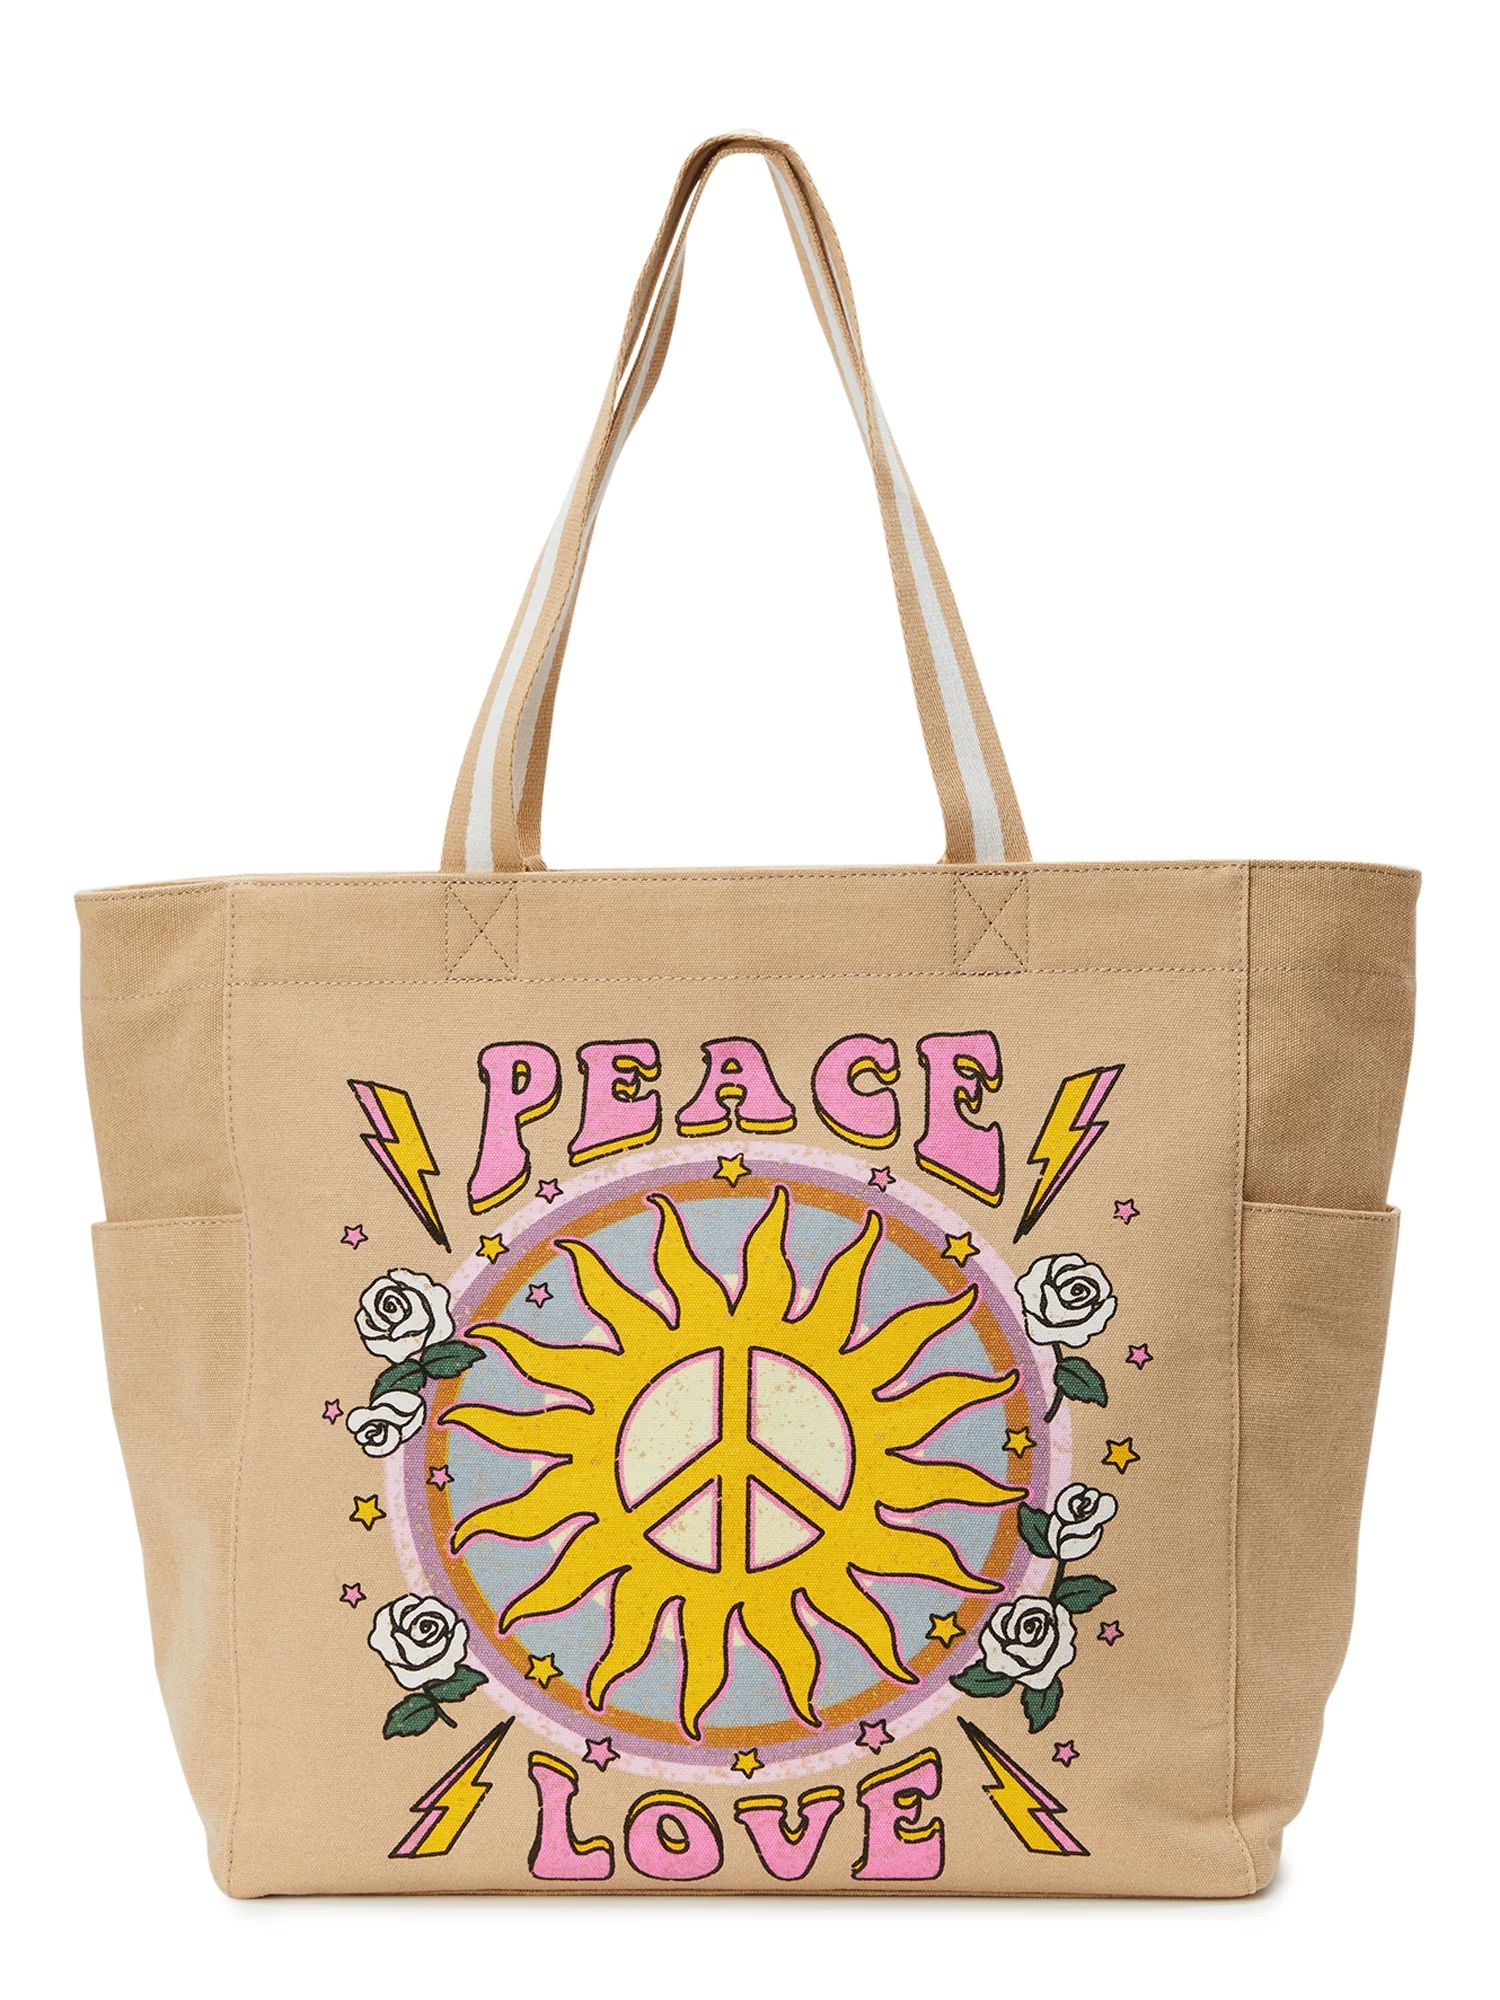 Women's Canvas Tote Handbag - Peace Love, Cafe Au Lait | Walmart (US)